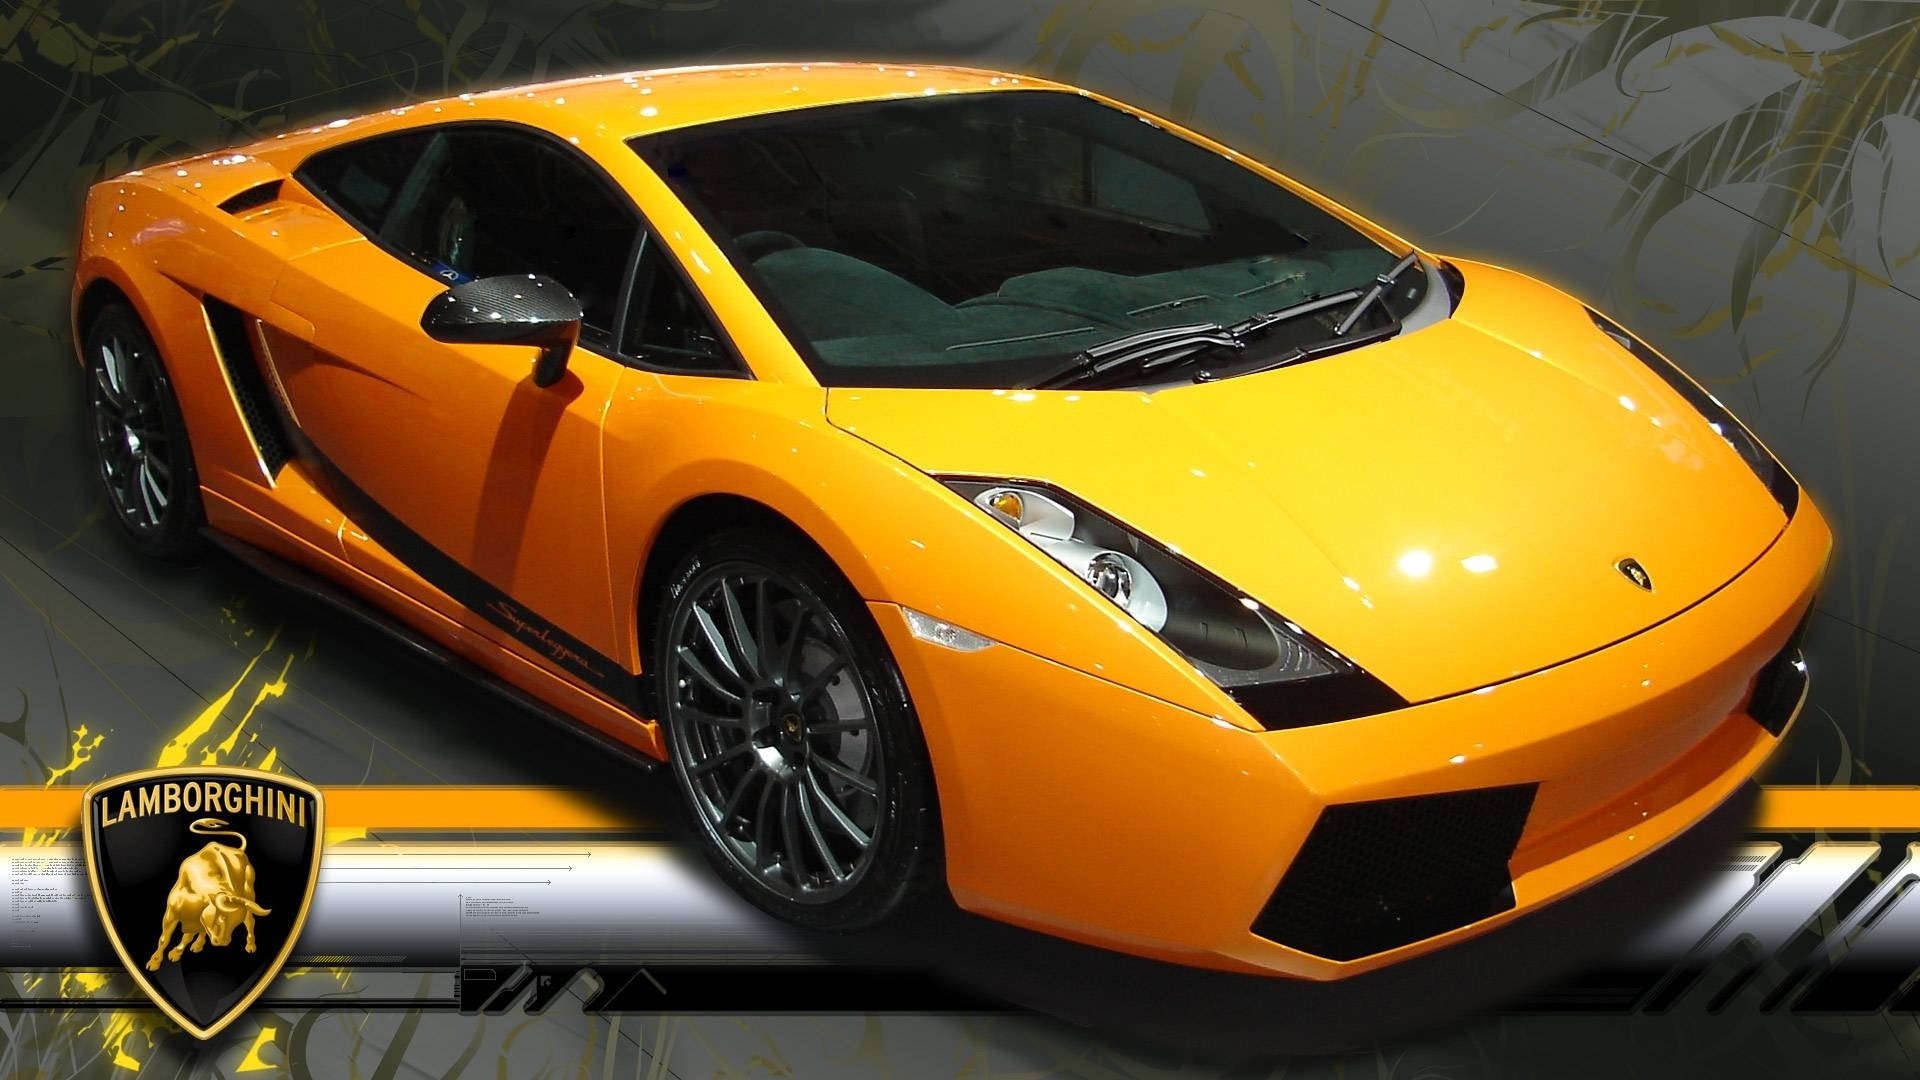 Market research: Automobili Lamborghini's and luxury cars ...